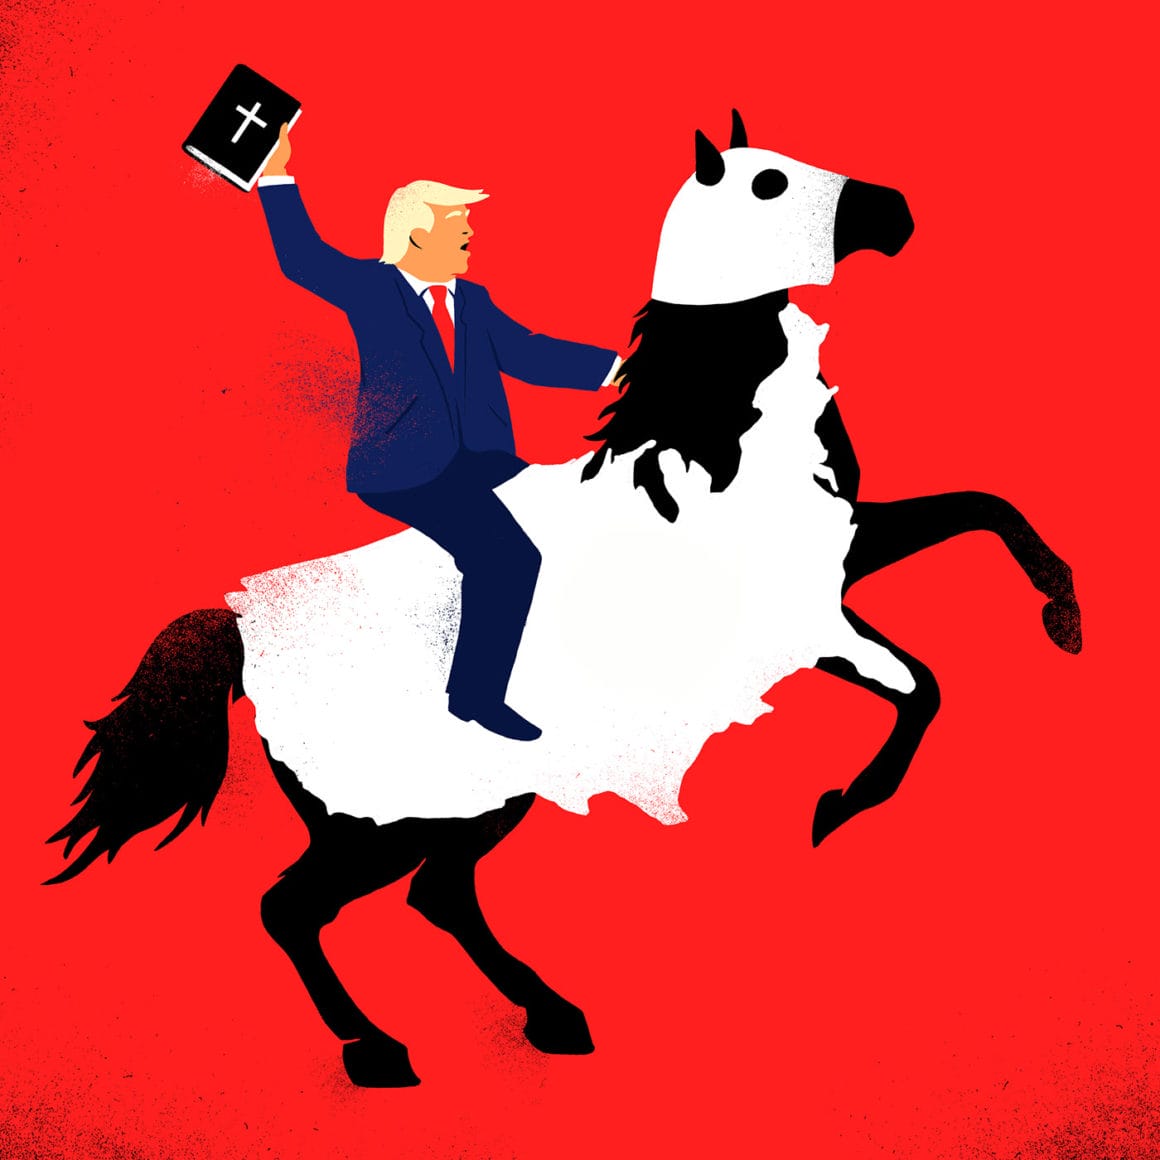 Sur fond rouge, Trump monte un cheval noir qui est recouvert d'une couverture représentant la carte des Etats-Unis et un masque ressemblant à celui du KKK. Trump tient un